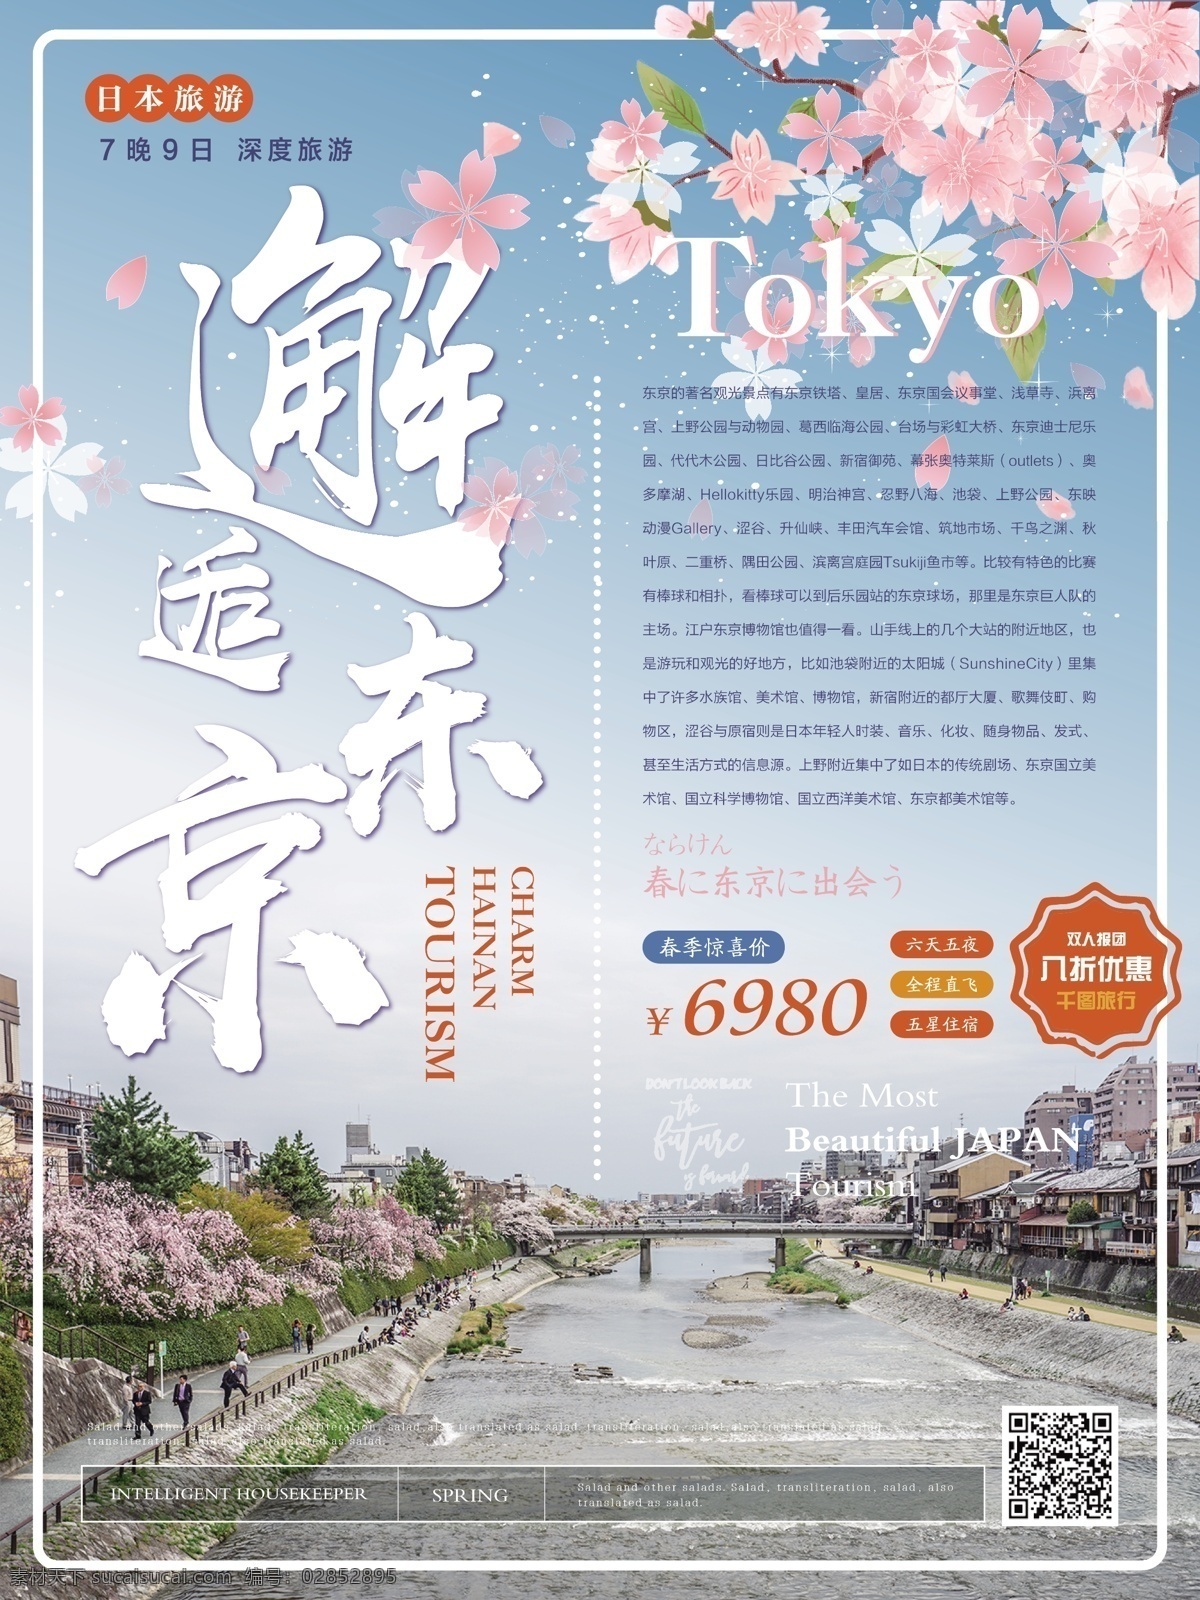 简约 清新 邂逅 东京 日本旅游 海报 简约风 春季 旅游 樱花朵朵 邂逅东京 主题 日本 旅游海报